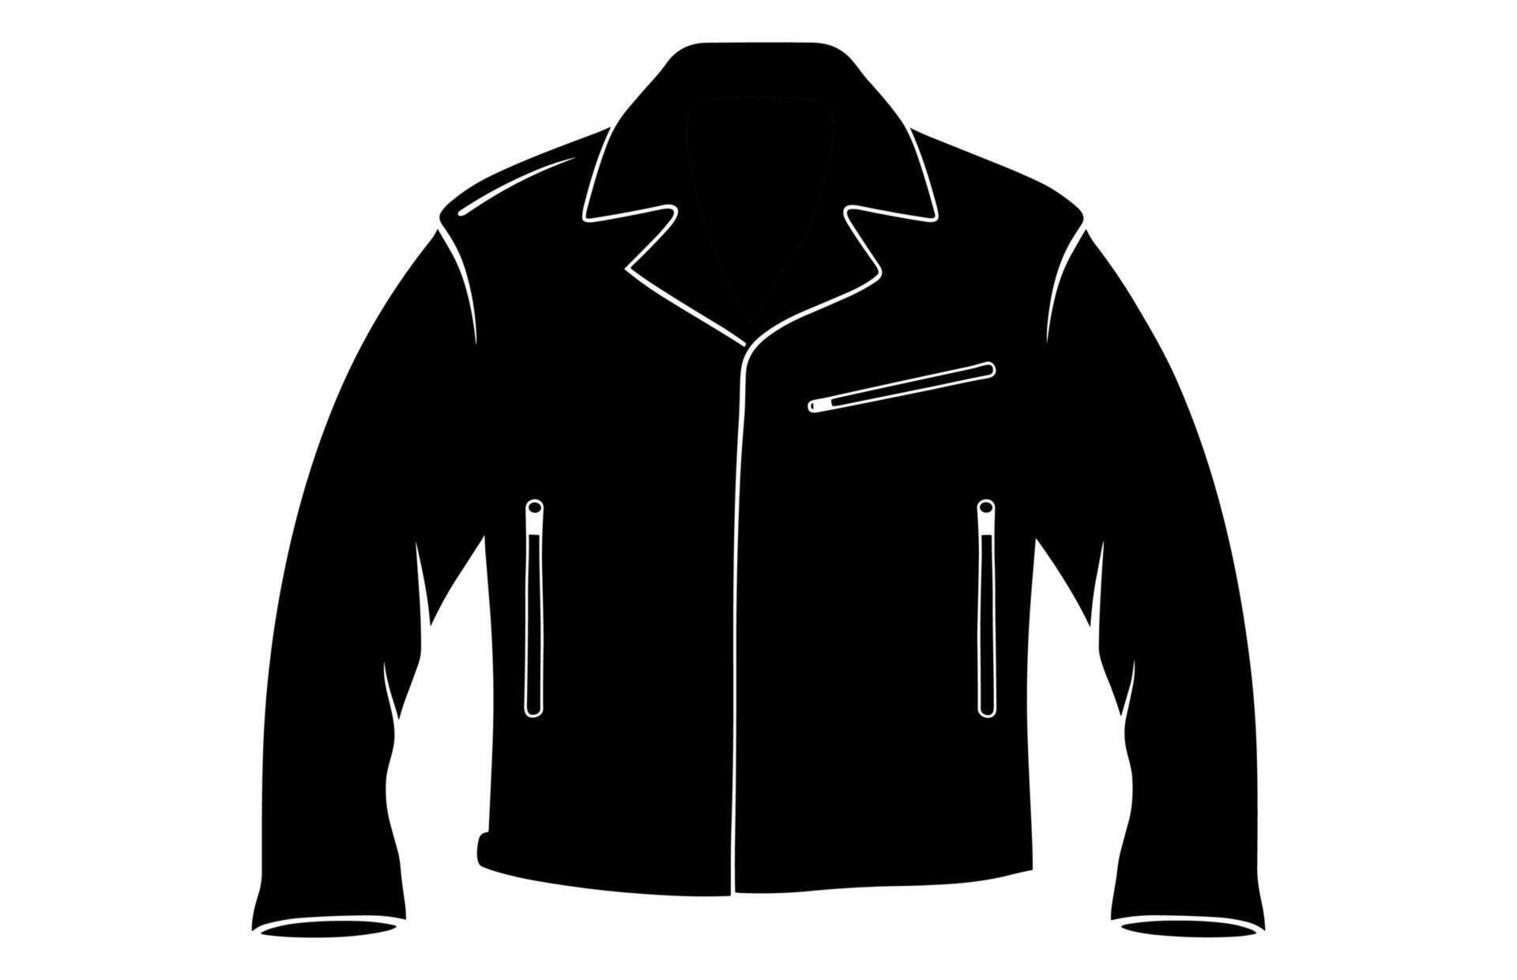 cuero chaqueta vector silueta ilustración, de los hombres casual ropa, clásico motorista chaqueta.